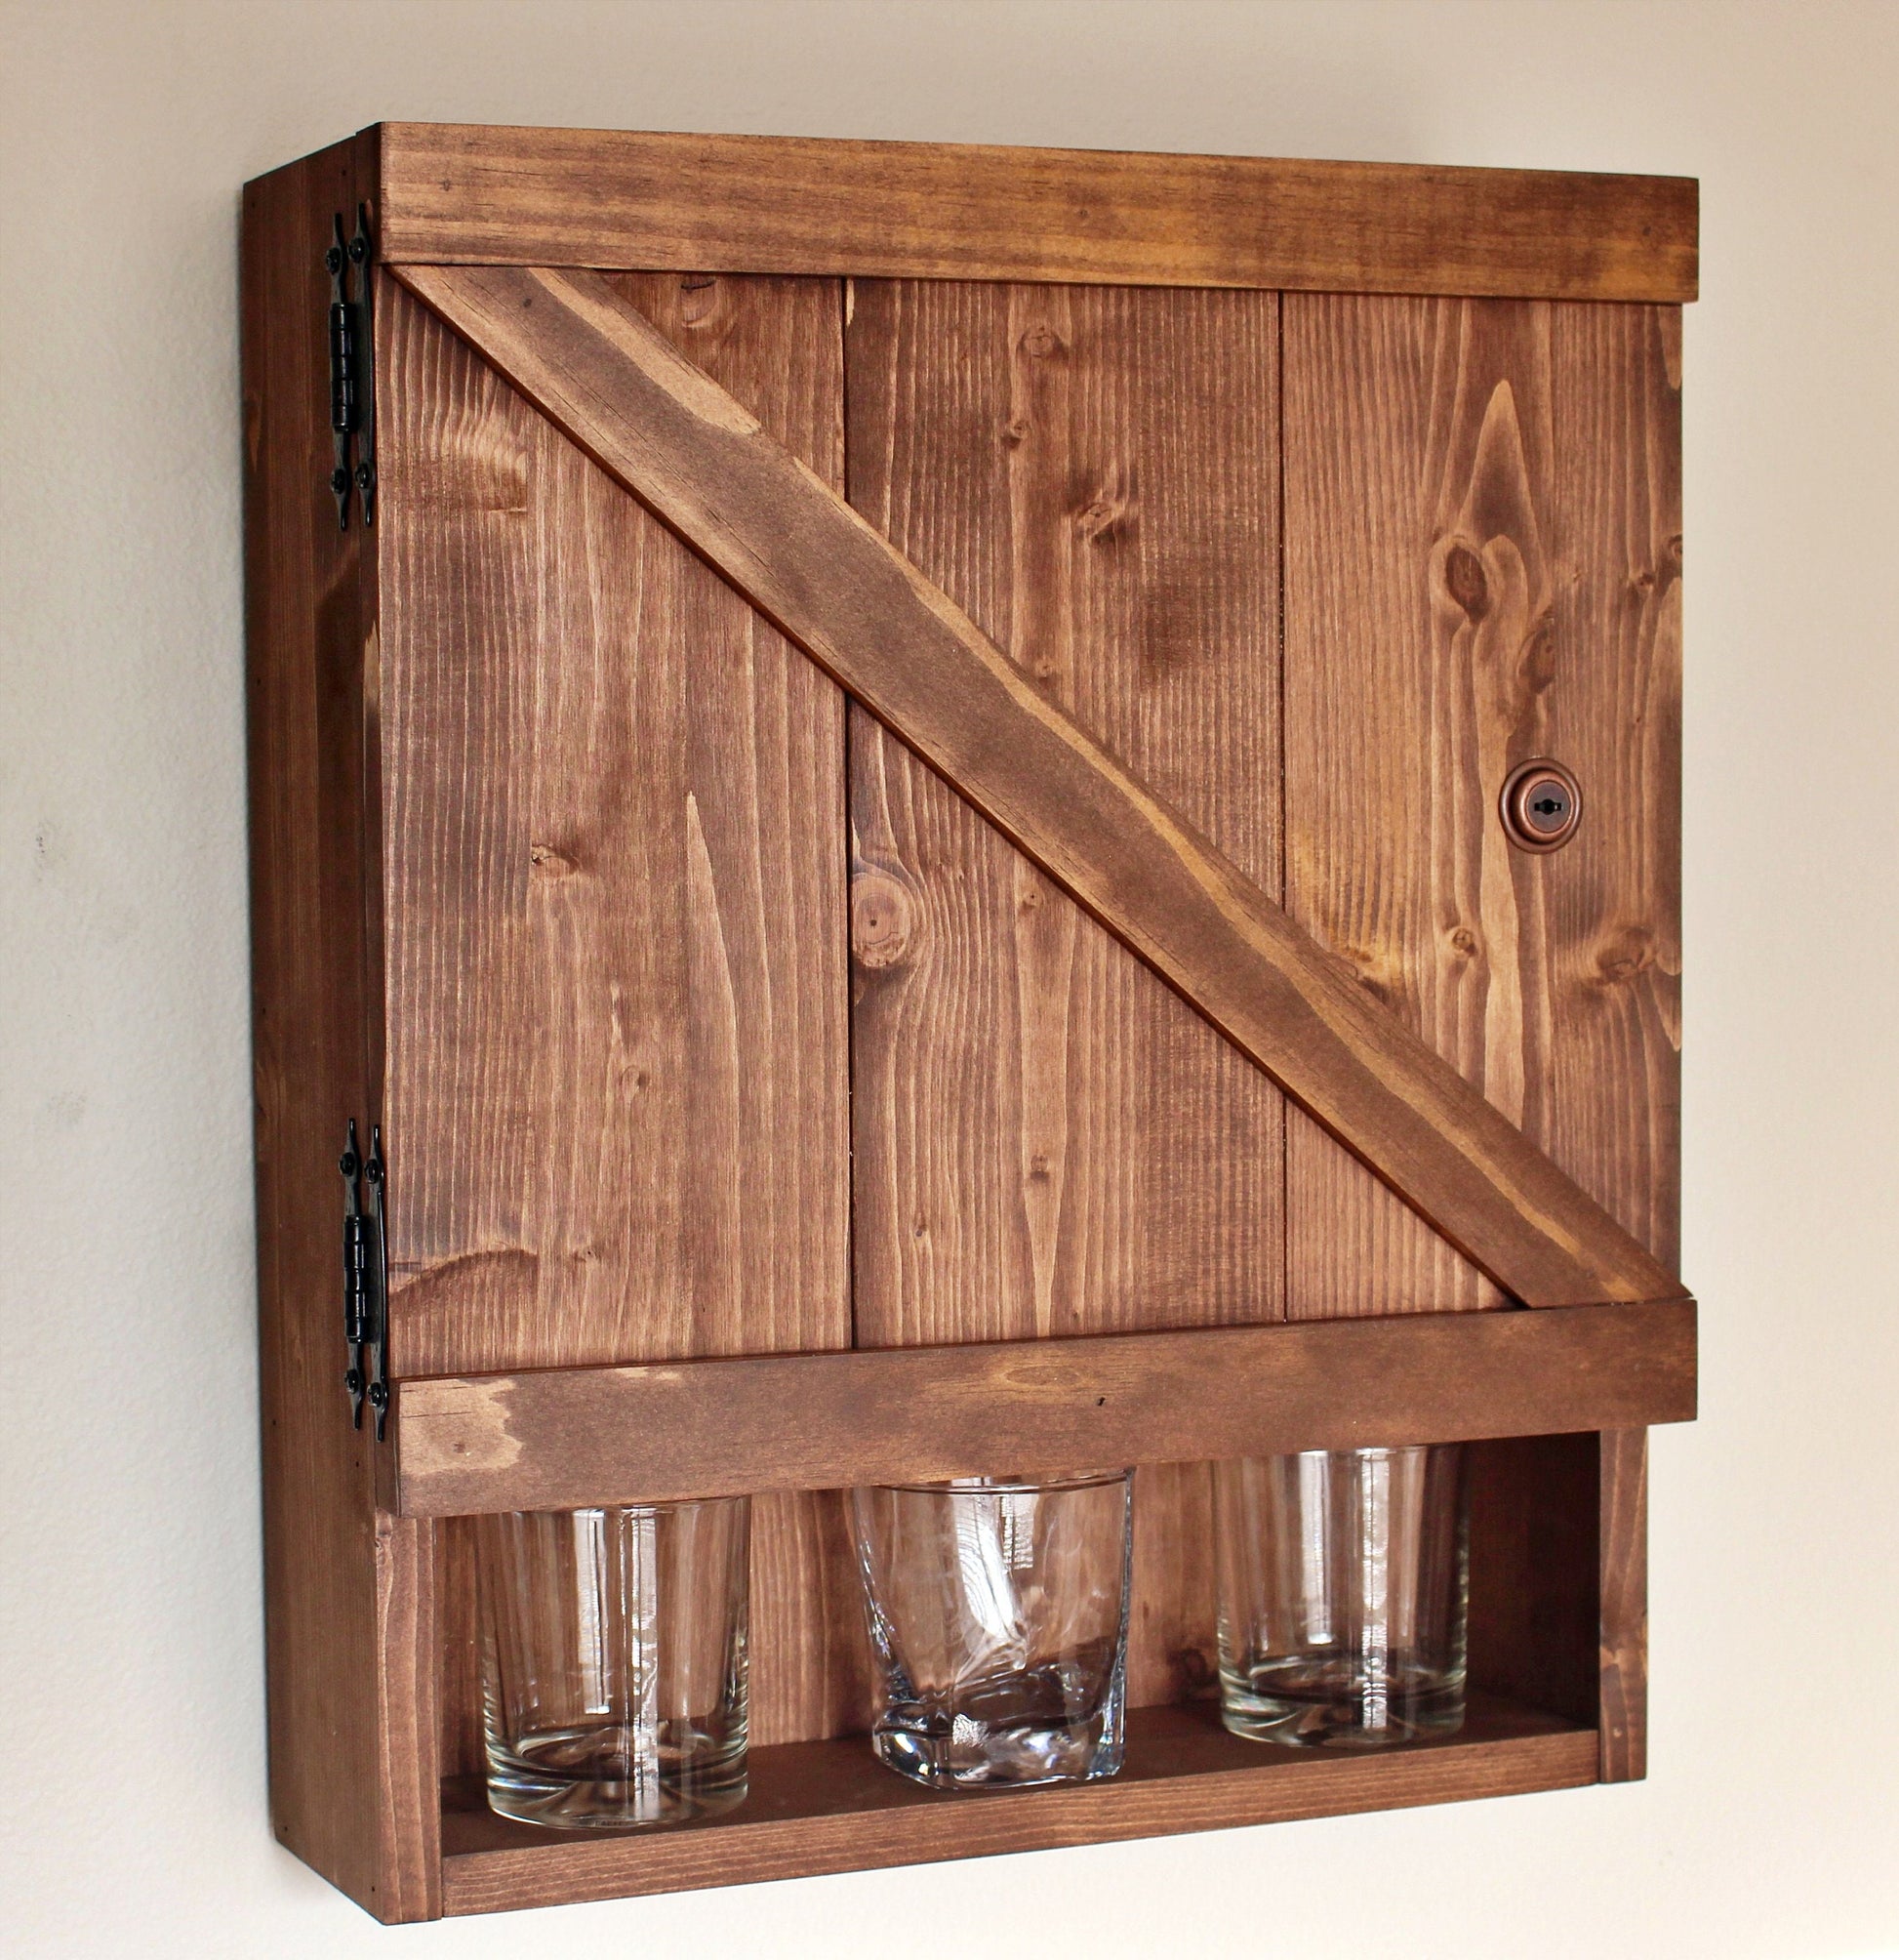 Barn Door Wooden Bar Liquor Cabinet with Lock – Minutemen Wood Design